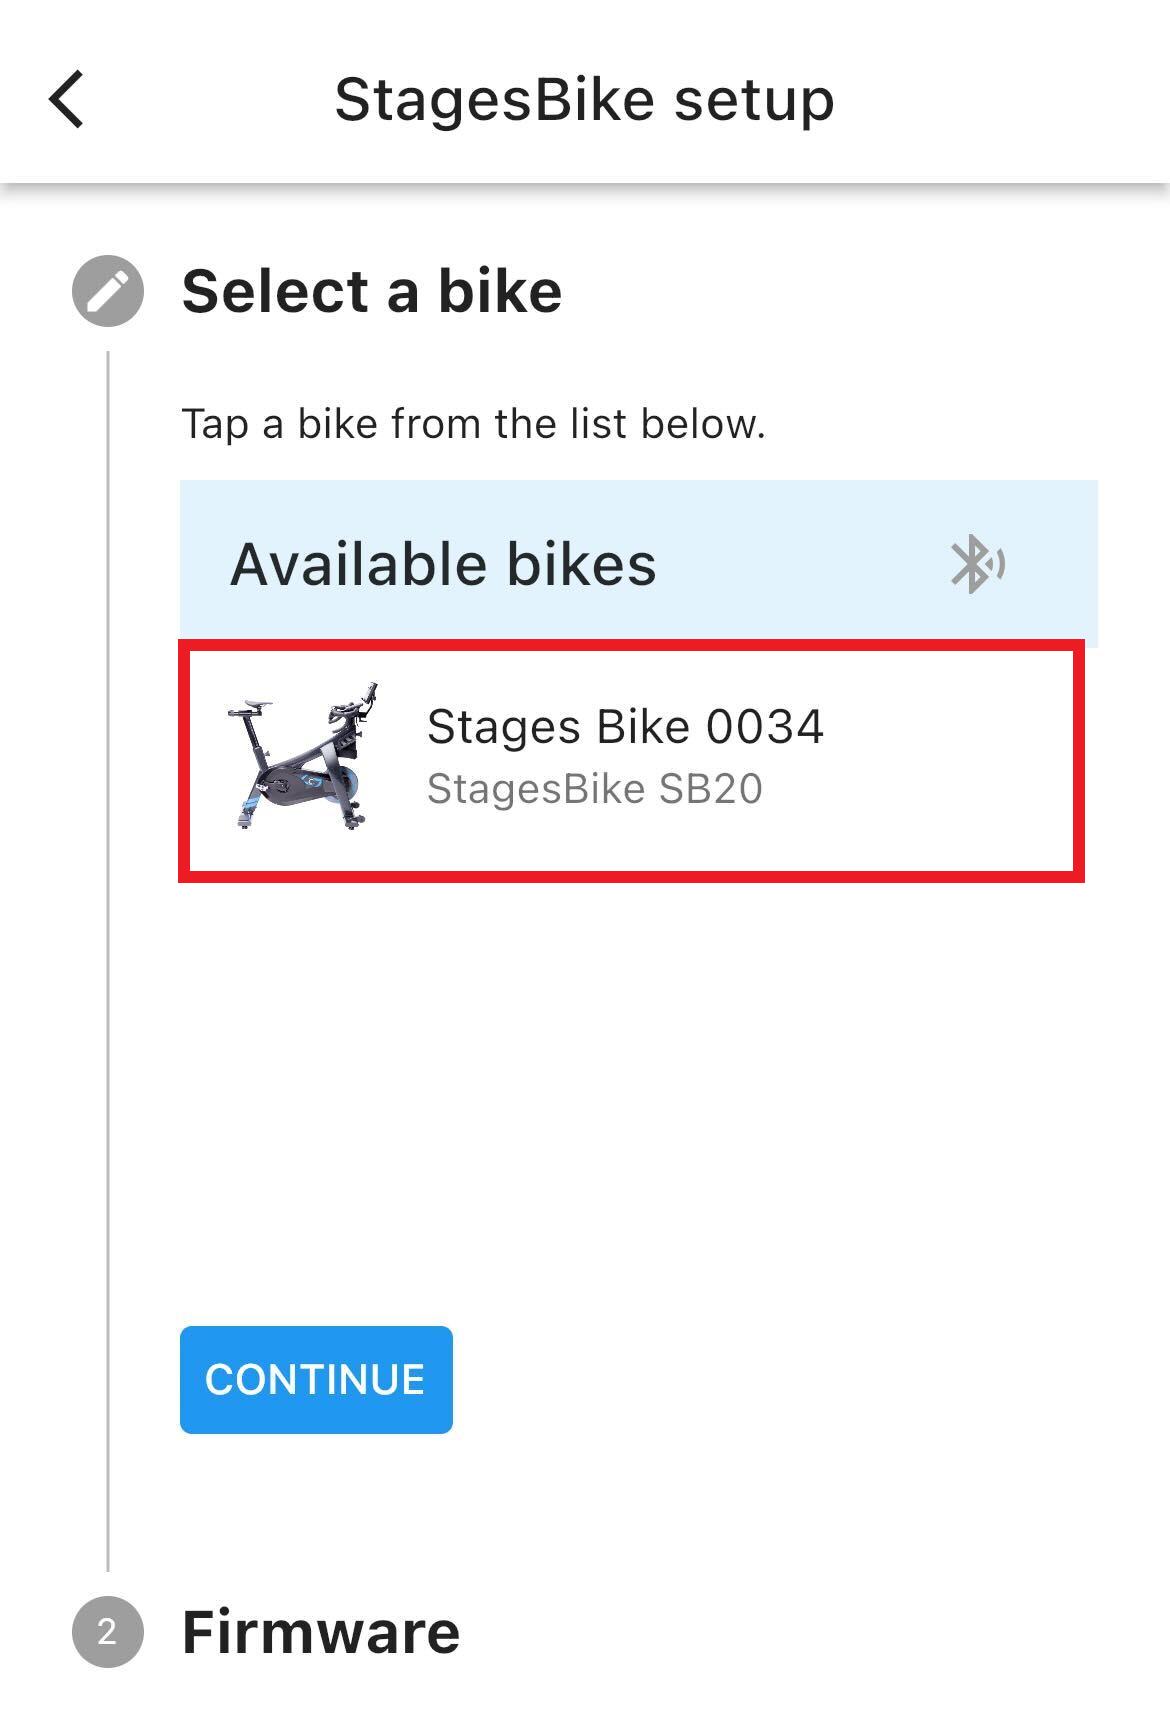 突出顯示您的StagesBike的可用單車